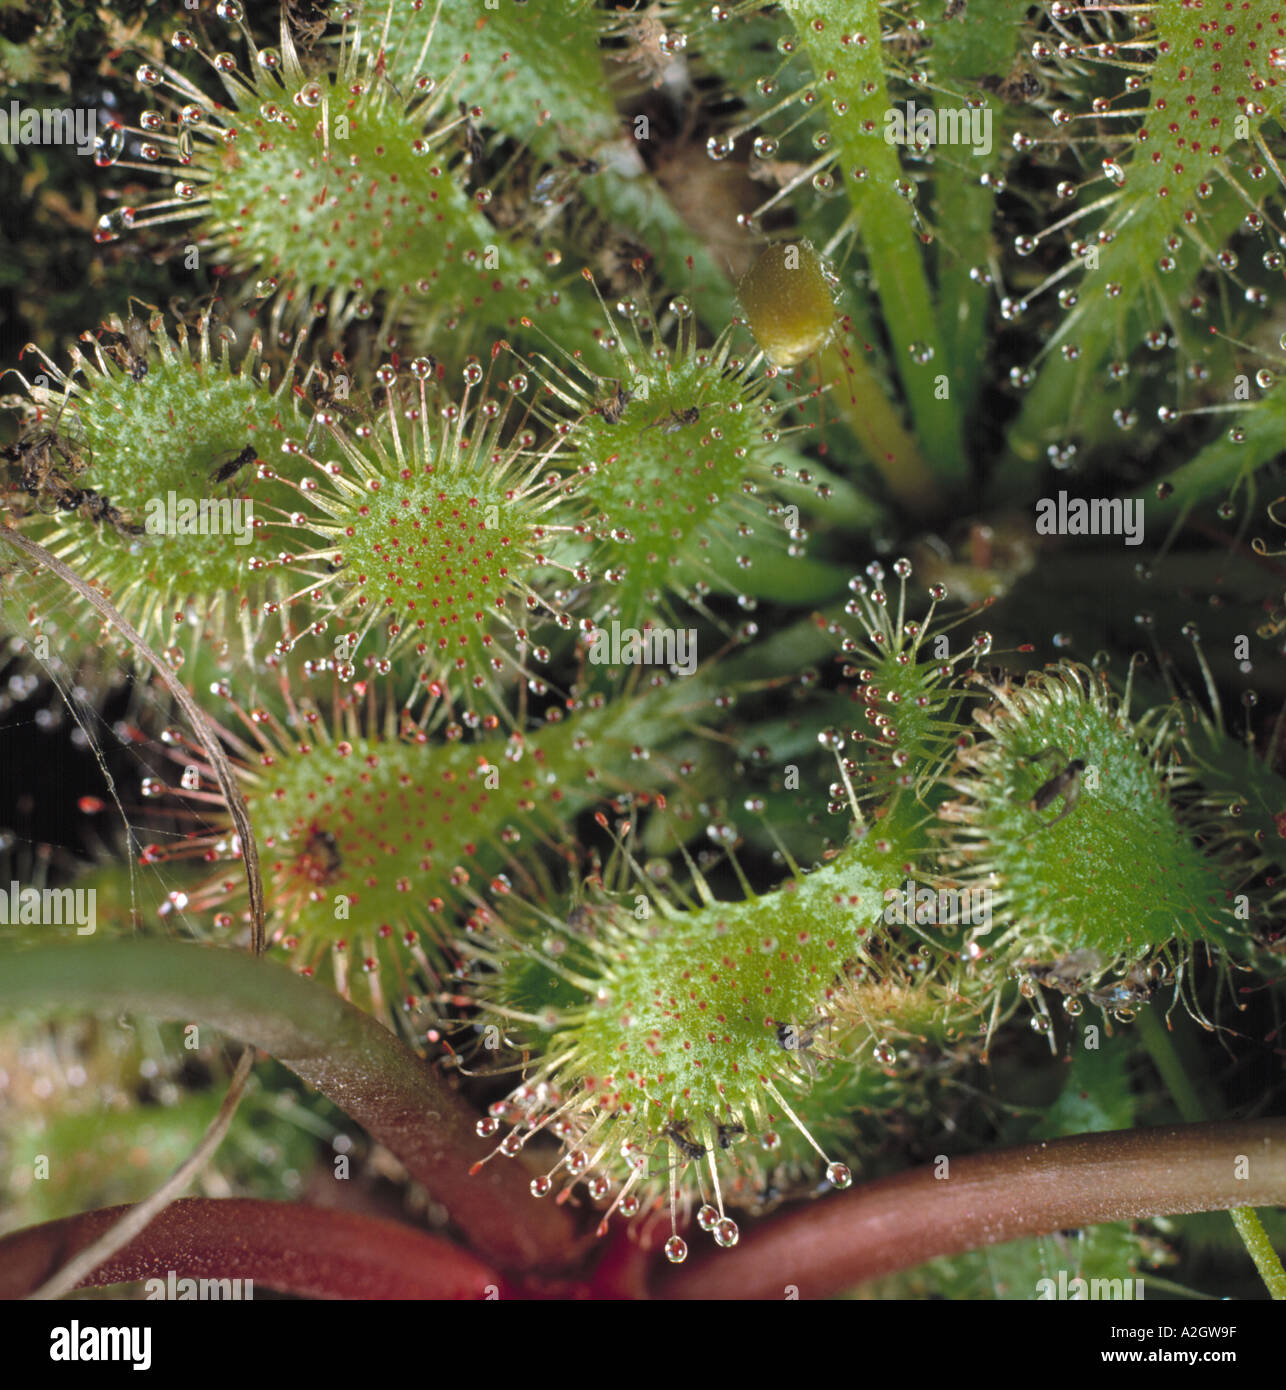 Un round lasciava sundew Drosera rotundifolia foglie con peli appiccicosi per intrappolare insetti che la pianta digerisce per azoto Foto Stock